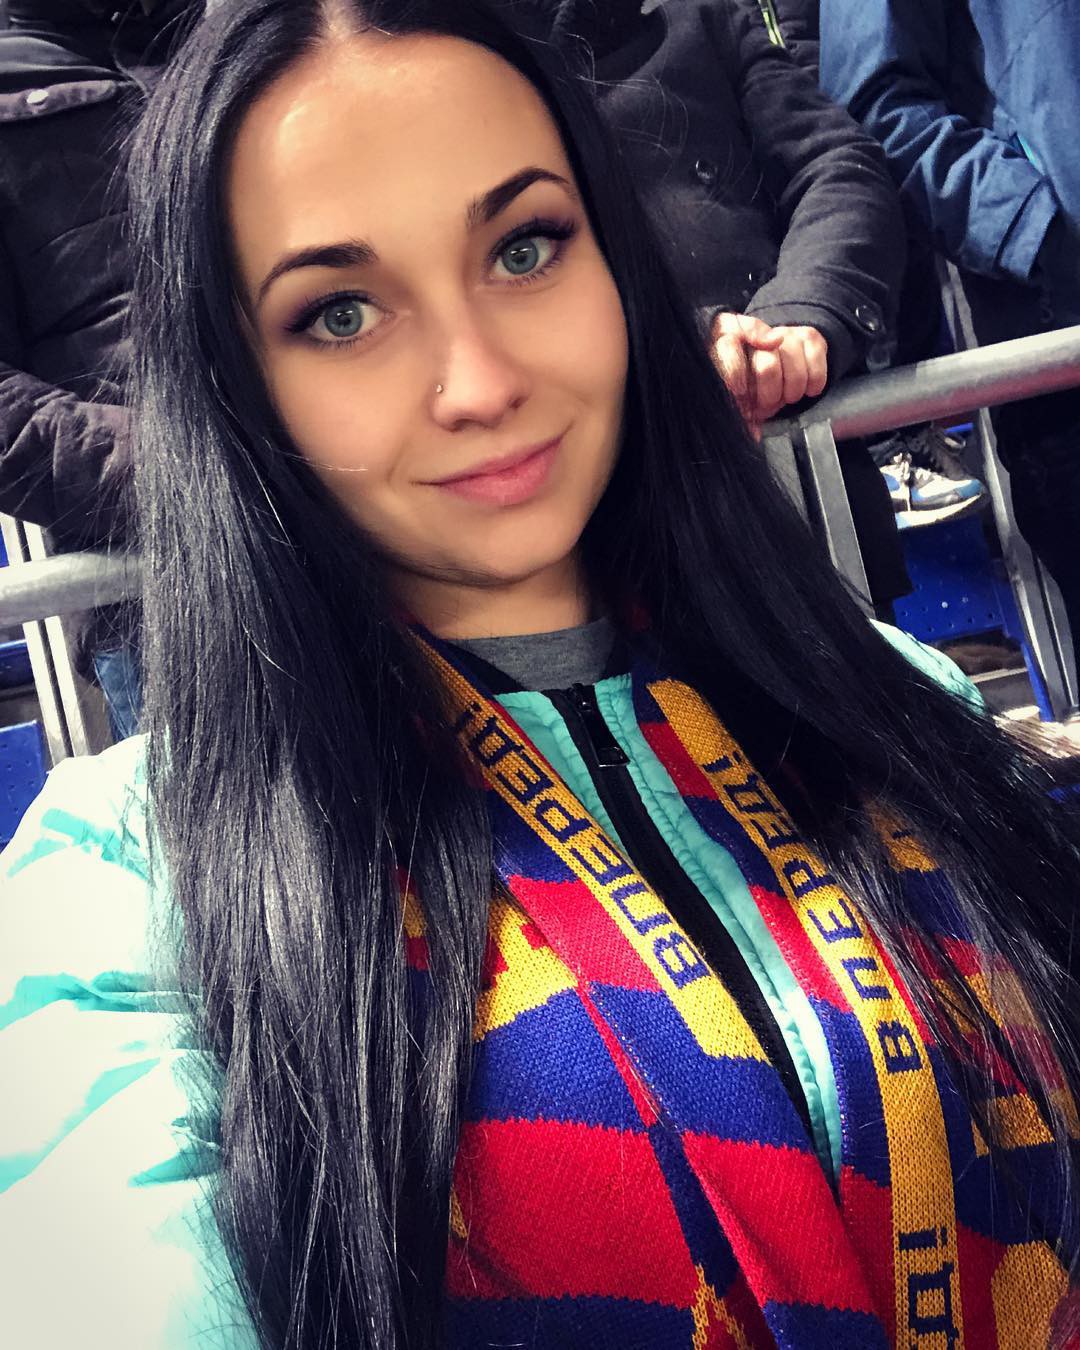 Fan bóng đá muốn vào tù sau khi chứng kiến nhan sắc xinh đẹp của nữ cảnh sát Nga - Ảnh 6.